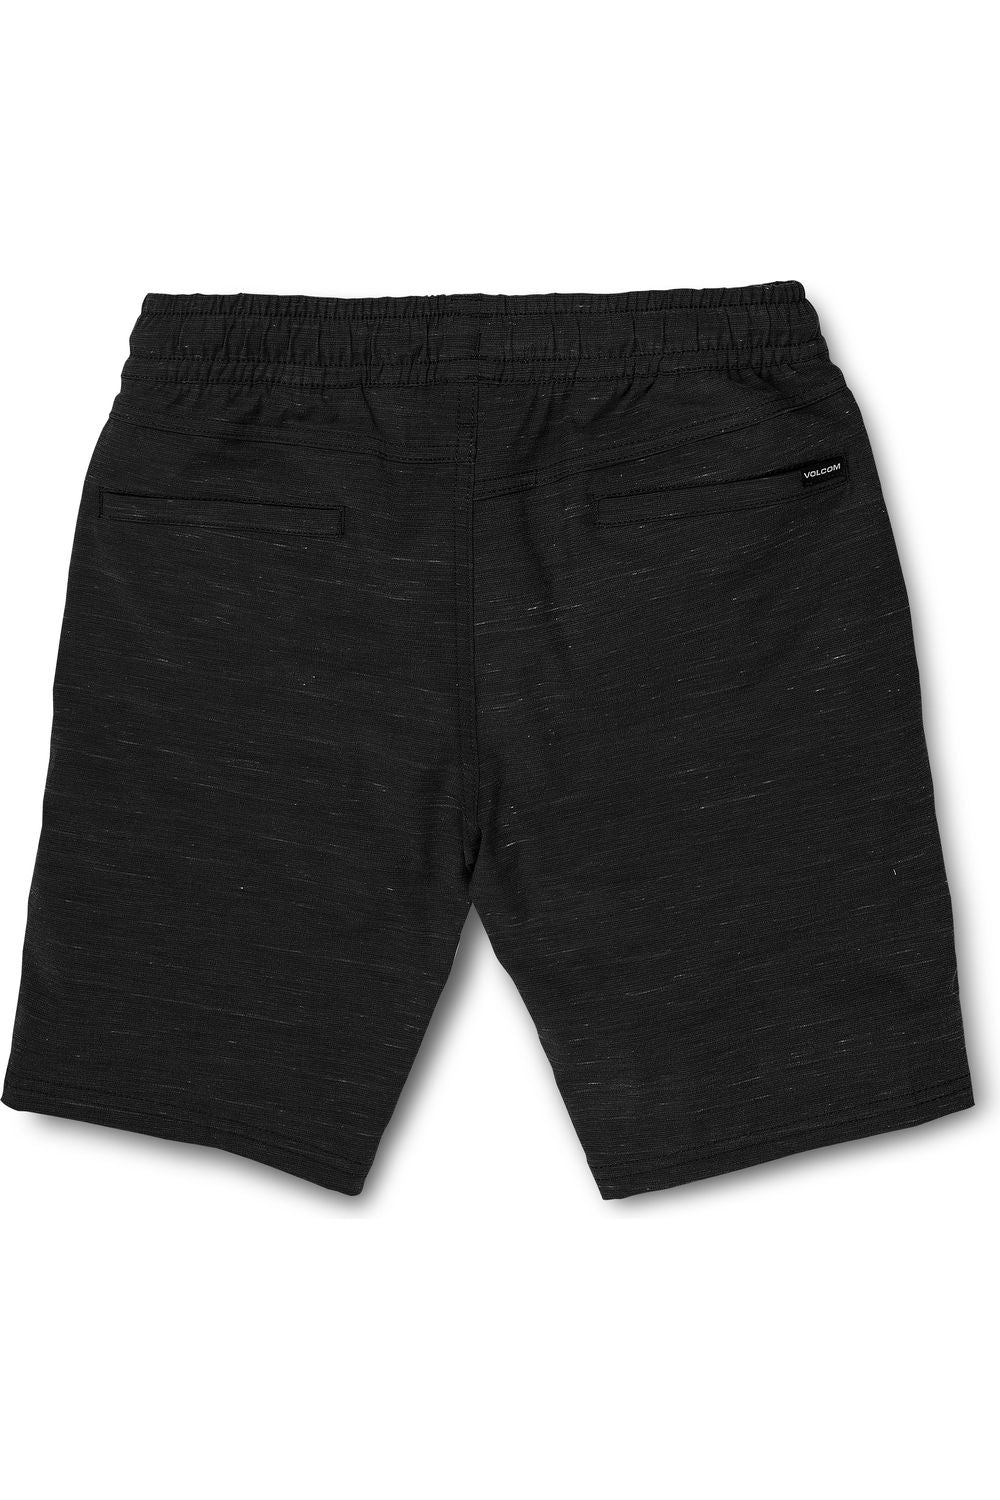 Volcom Understoned Hybrid 18 Shorts Black